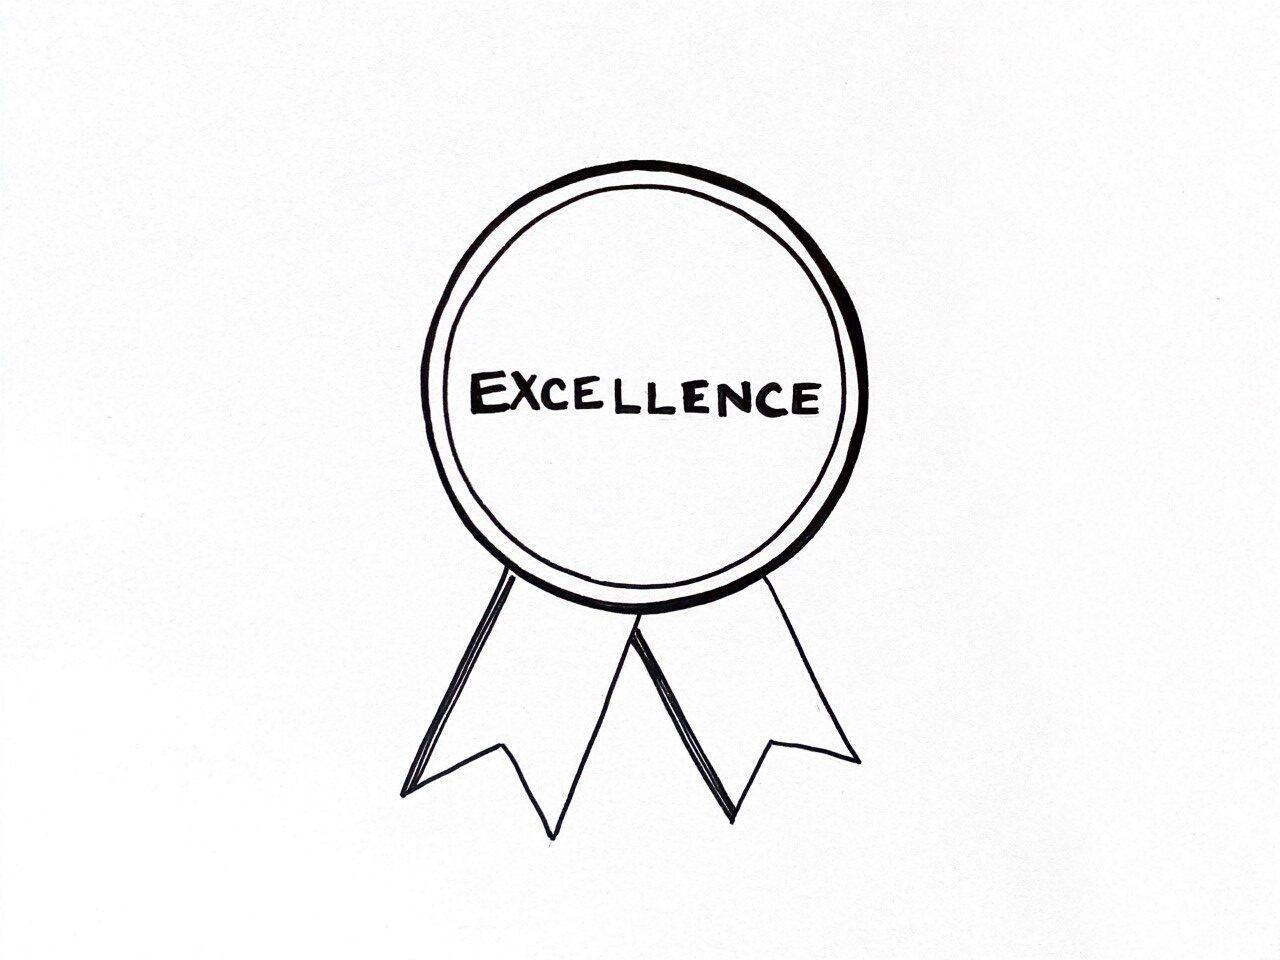 Skizze eines Auszeichnung mit dem Wort "excellence" als Symbol für Qualität steigern im Unternehmen